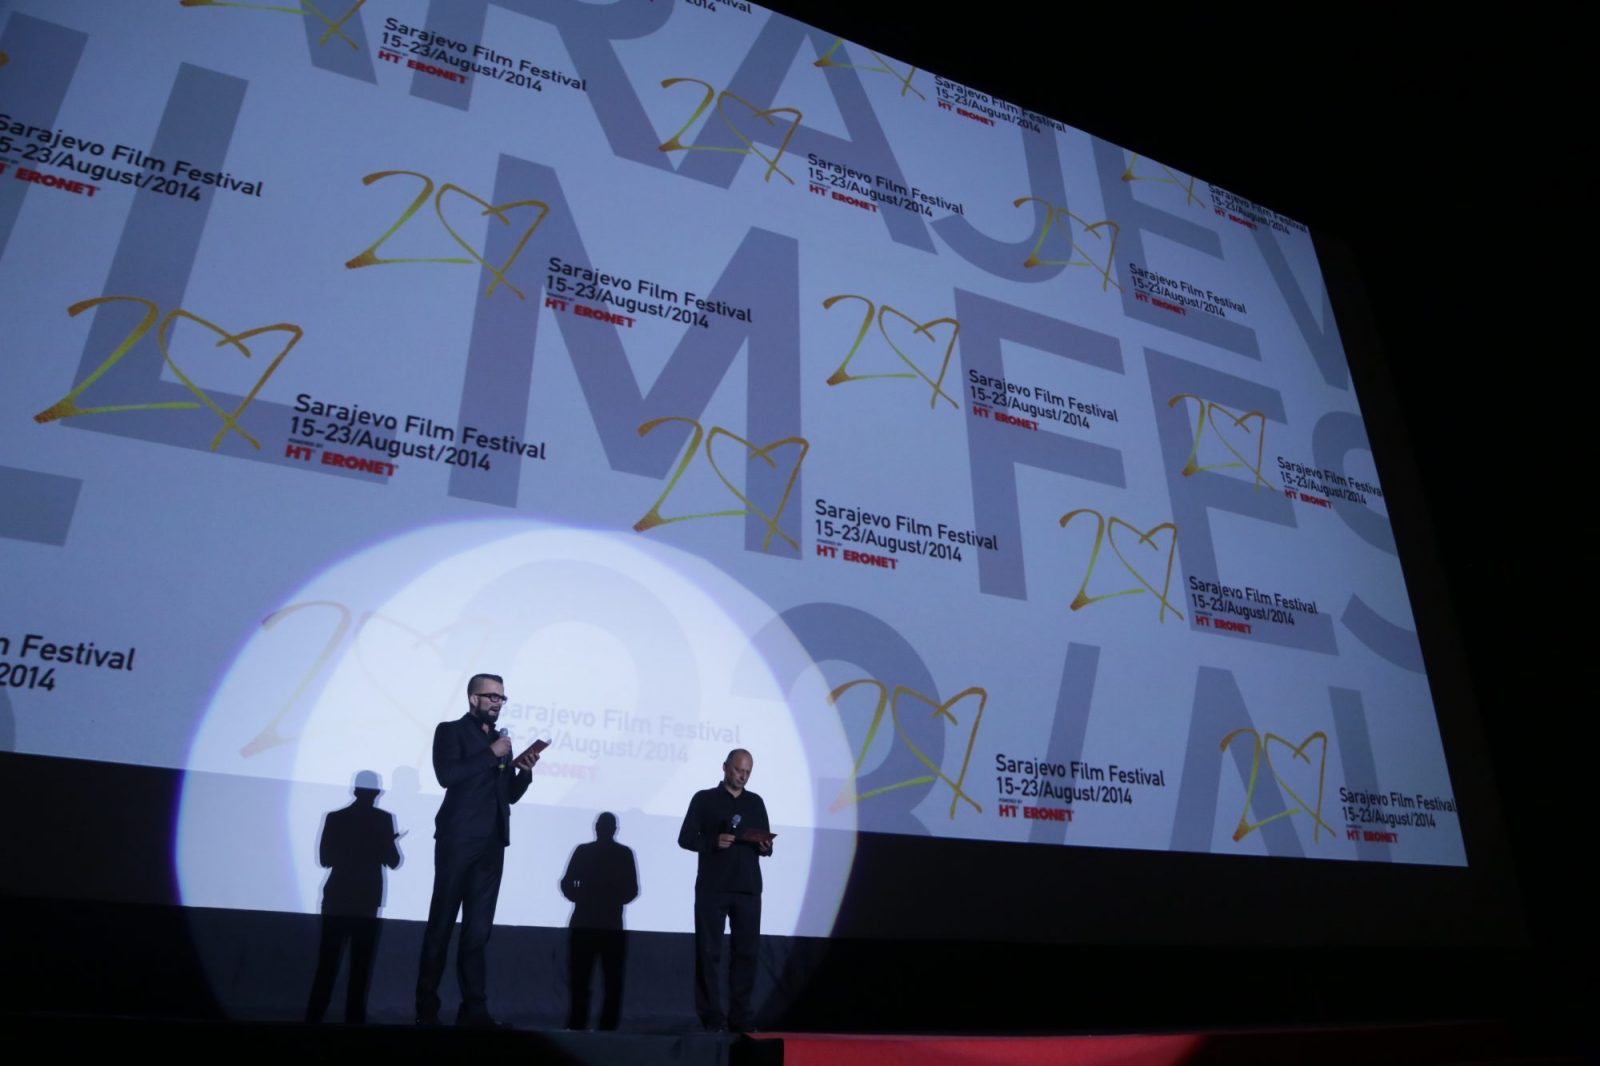 20. Sarajevo Film Festival: Projekcija filma "Pasja ljubav" - Open Air ispunjen do posljednjeg mjesta